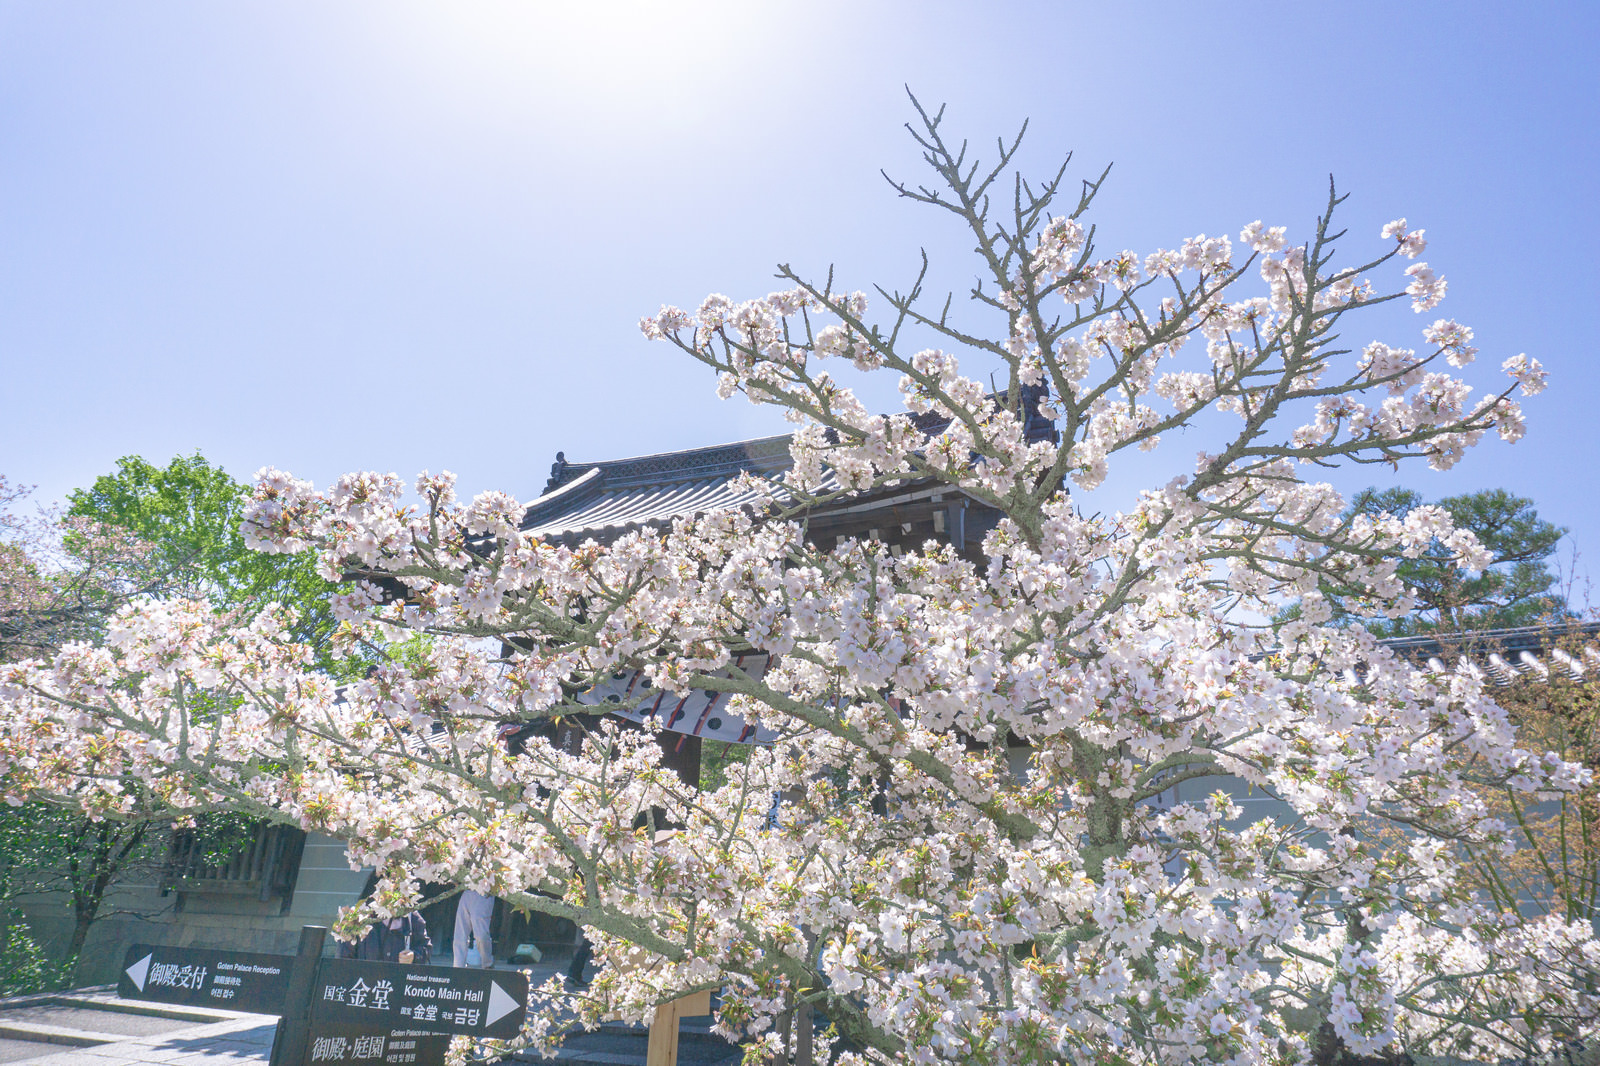 「逆光に輝く桜とその陰に建つ仁和寺本坊表門と案内看板 | フリー素材のぱくたそ」の写真